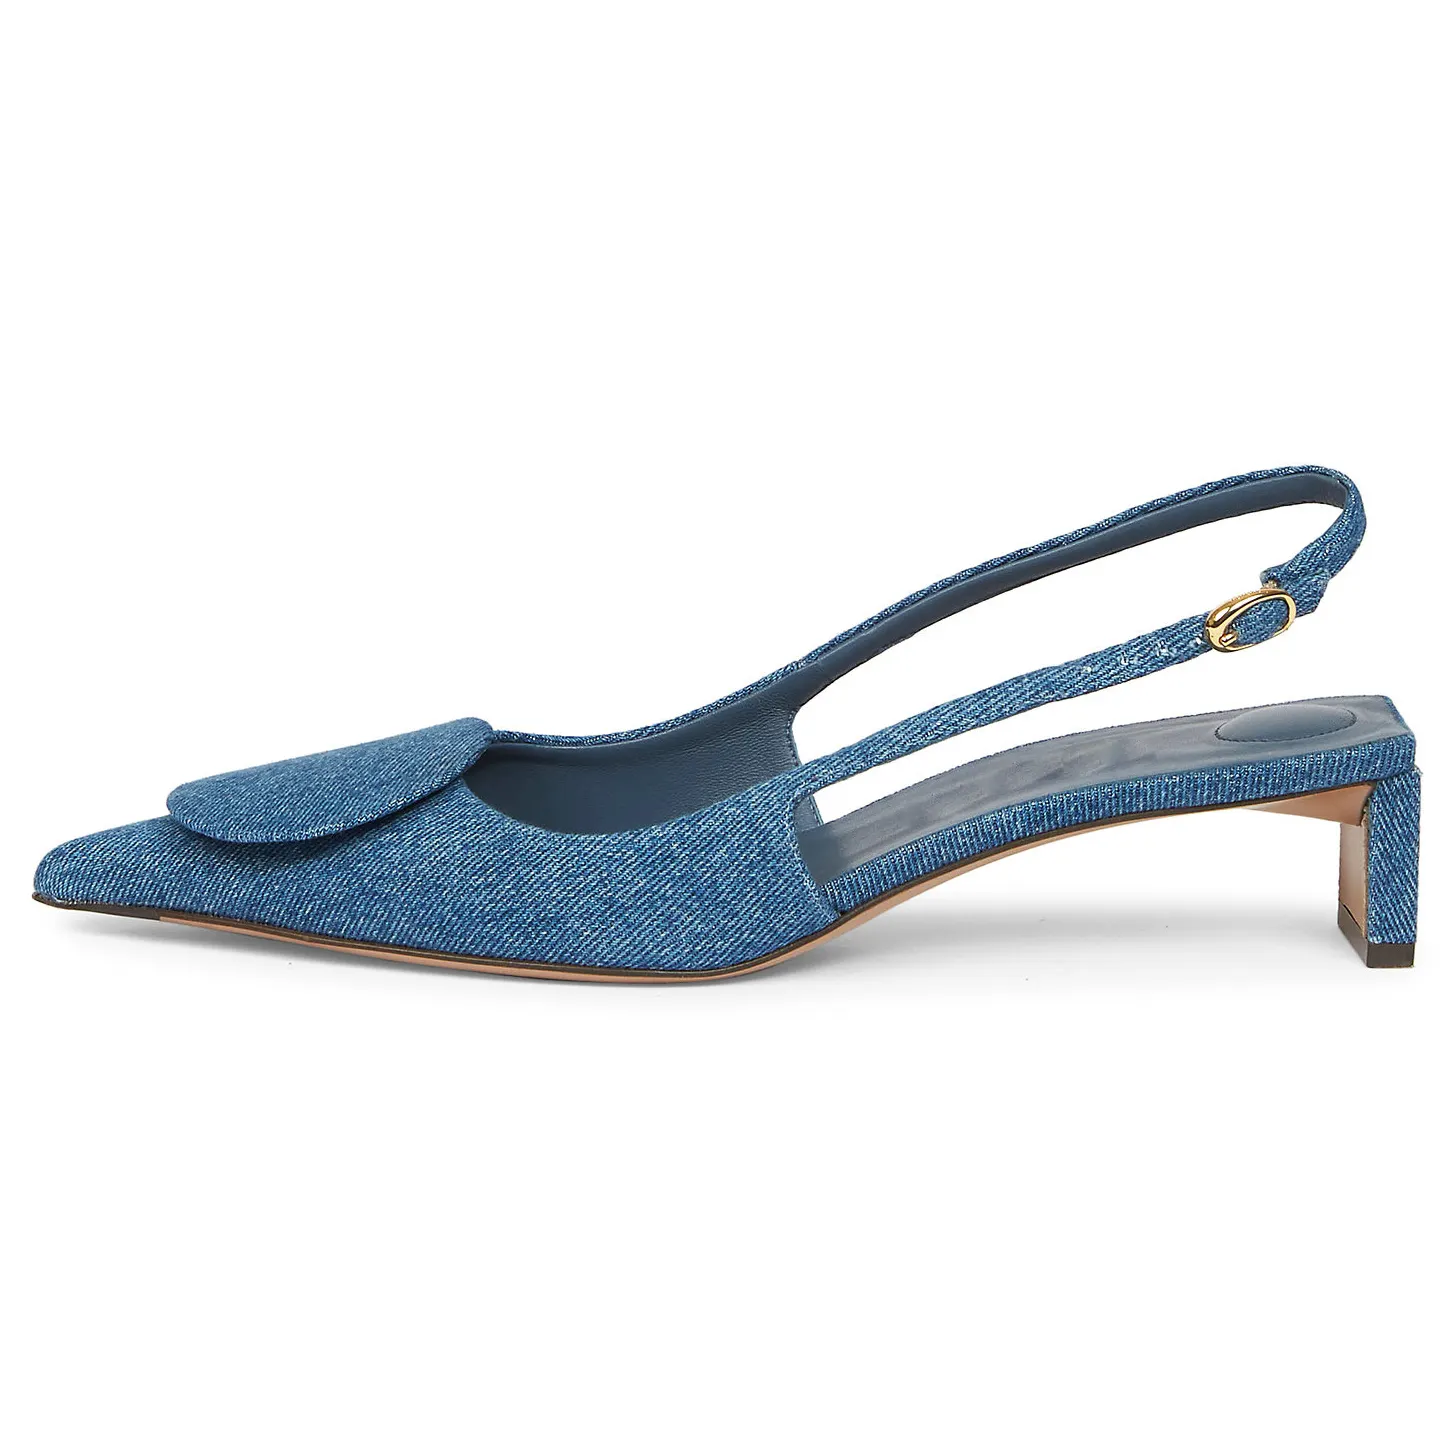 OEM/ODM haute qualité personnalisée Slingback Design Denim semelle supérieure en caoutchouc bout pointu Wafer talons femme sandale chaussures